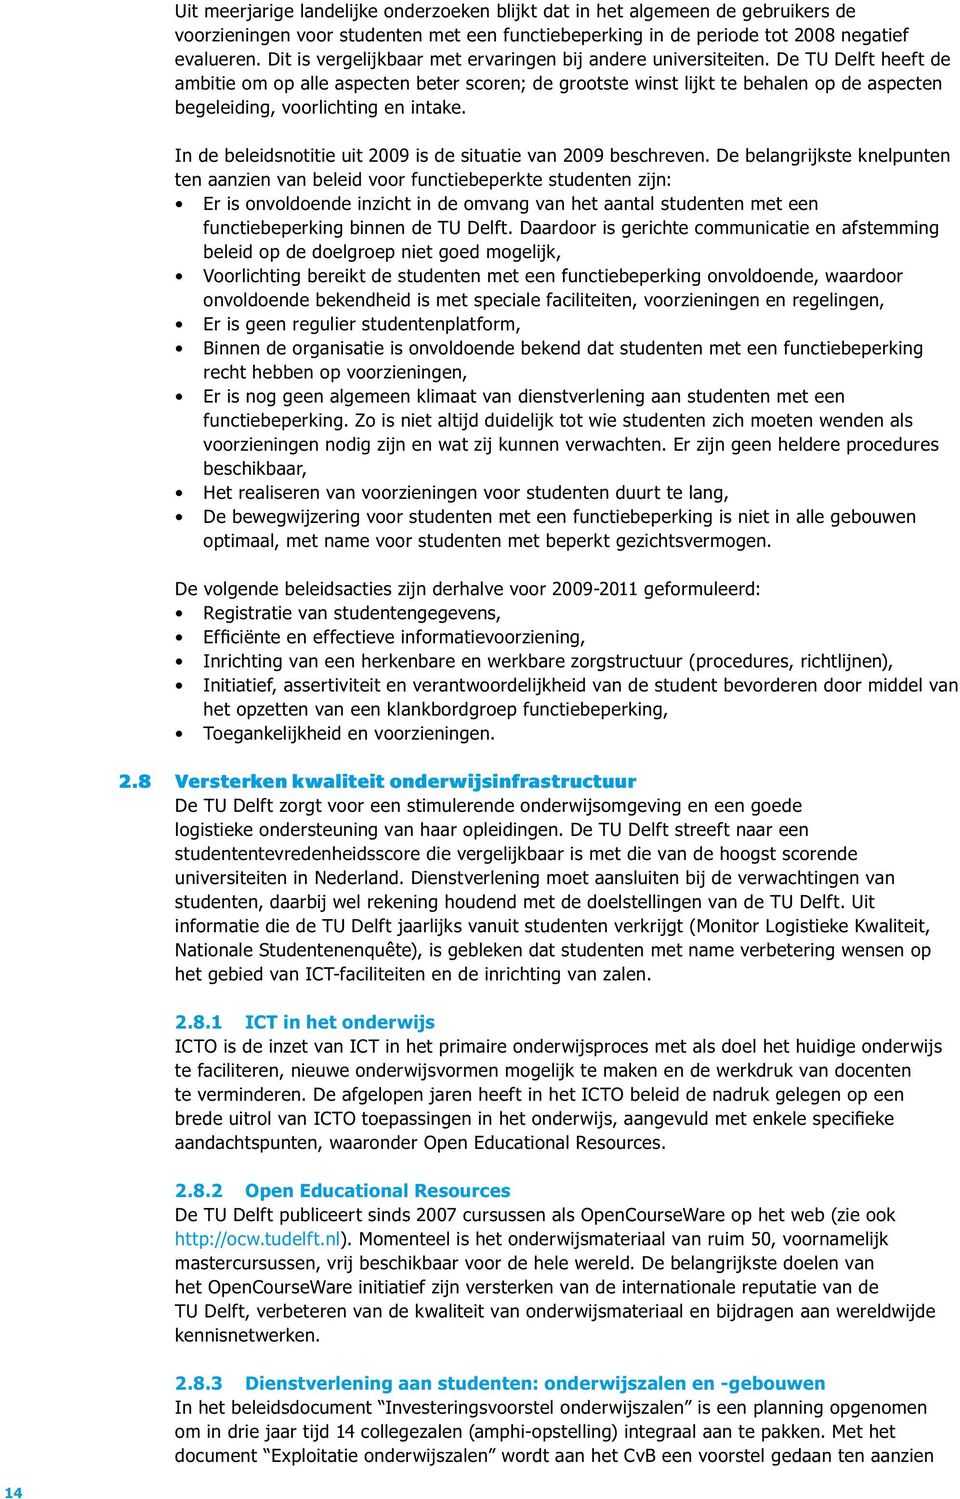 De TU Delft heeft de ambitie om op alle aspecten beter scoren; de grootste winst lijkt te behalen op de aspecten begeleiding, voorlichting en intake.